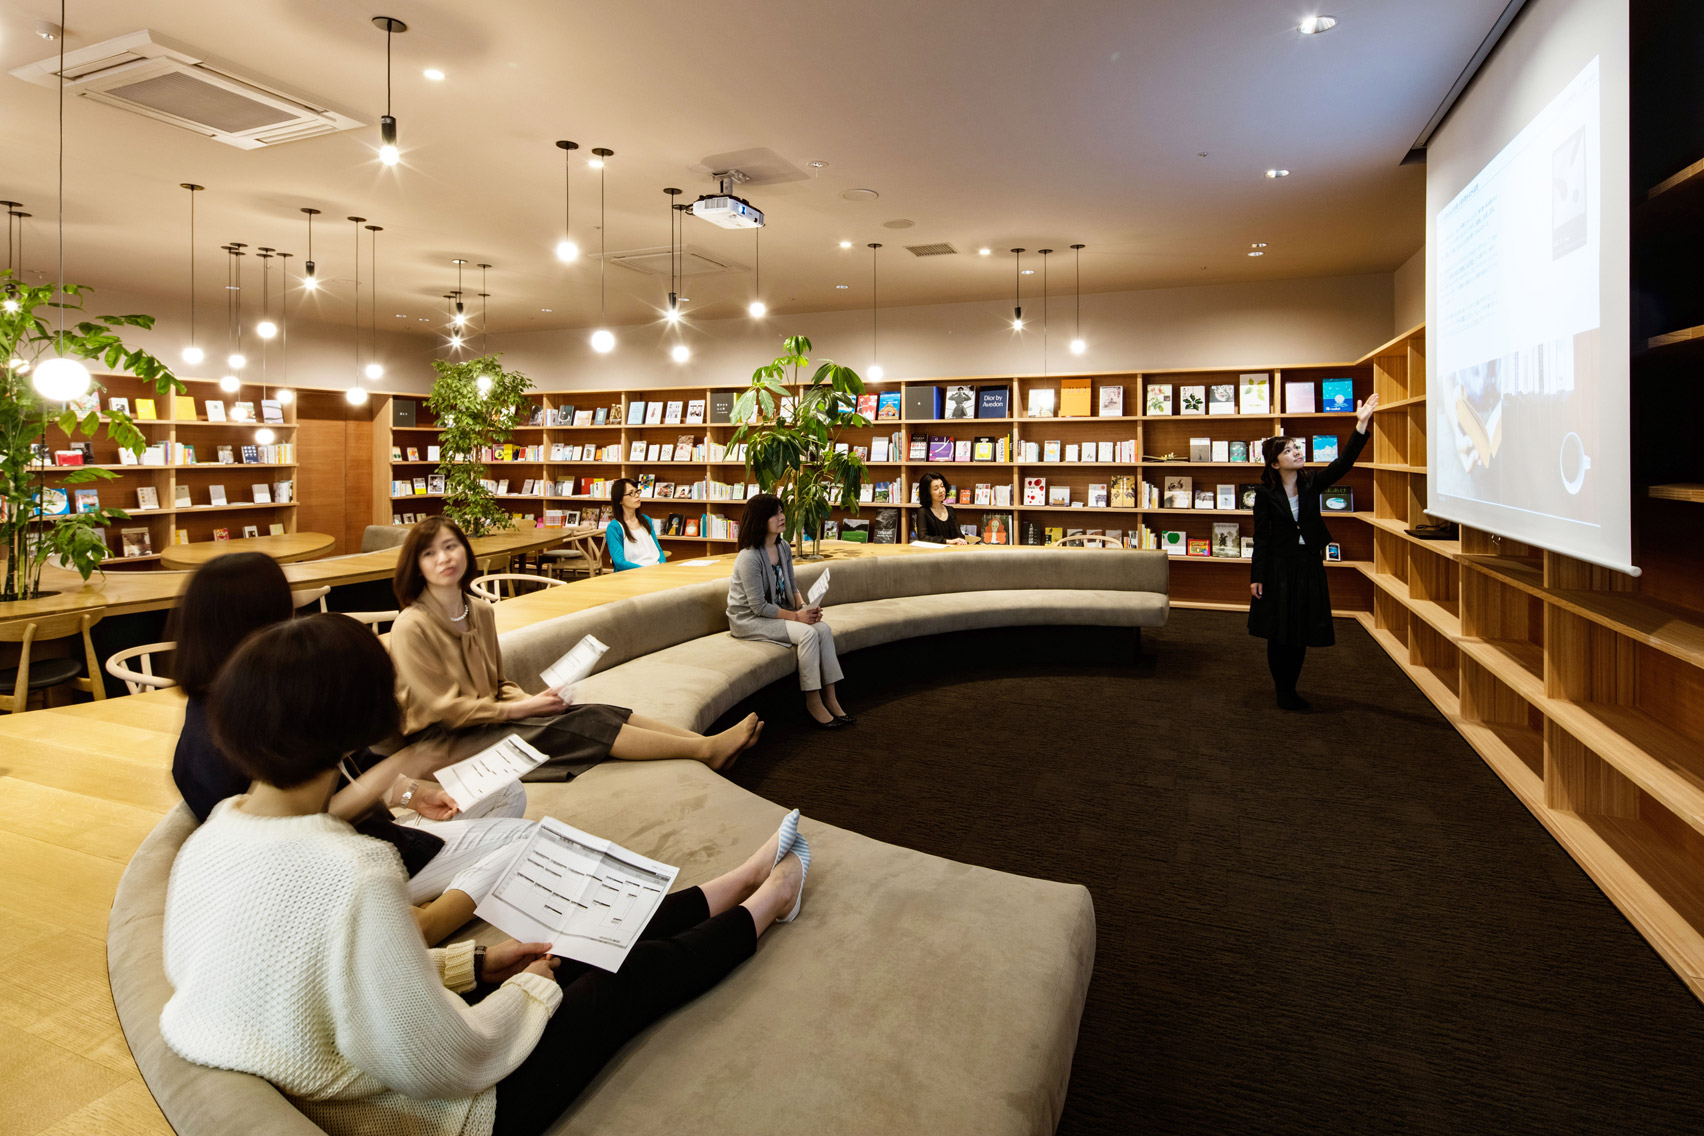 Nőknek szóló könyvtár nyílt Japánban